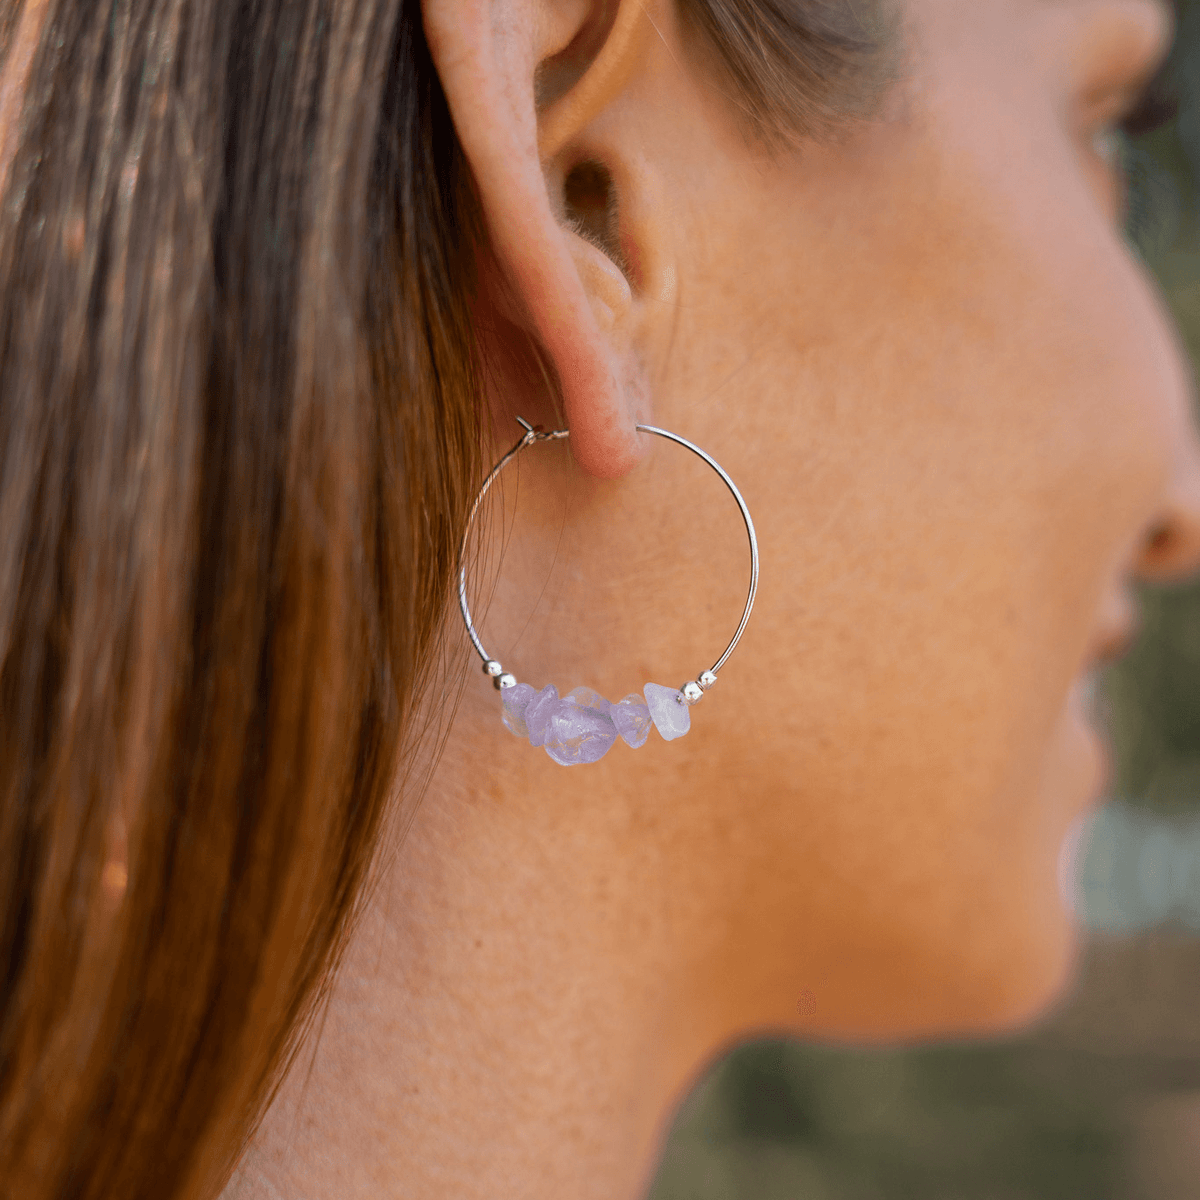 Amethyst Crystal Chip Large Hoop Earrings - Amethyst Crystal Chip Large Hoop Earrings - Sterling Silver - Luna Tide Handmade Crystal Jewellery